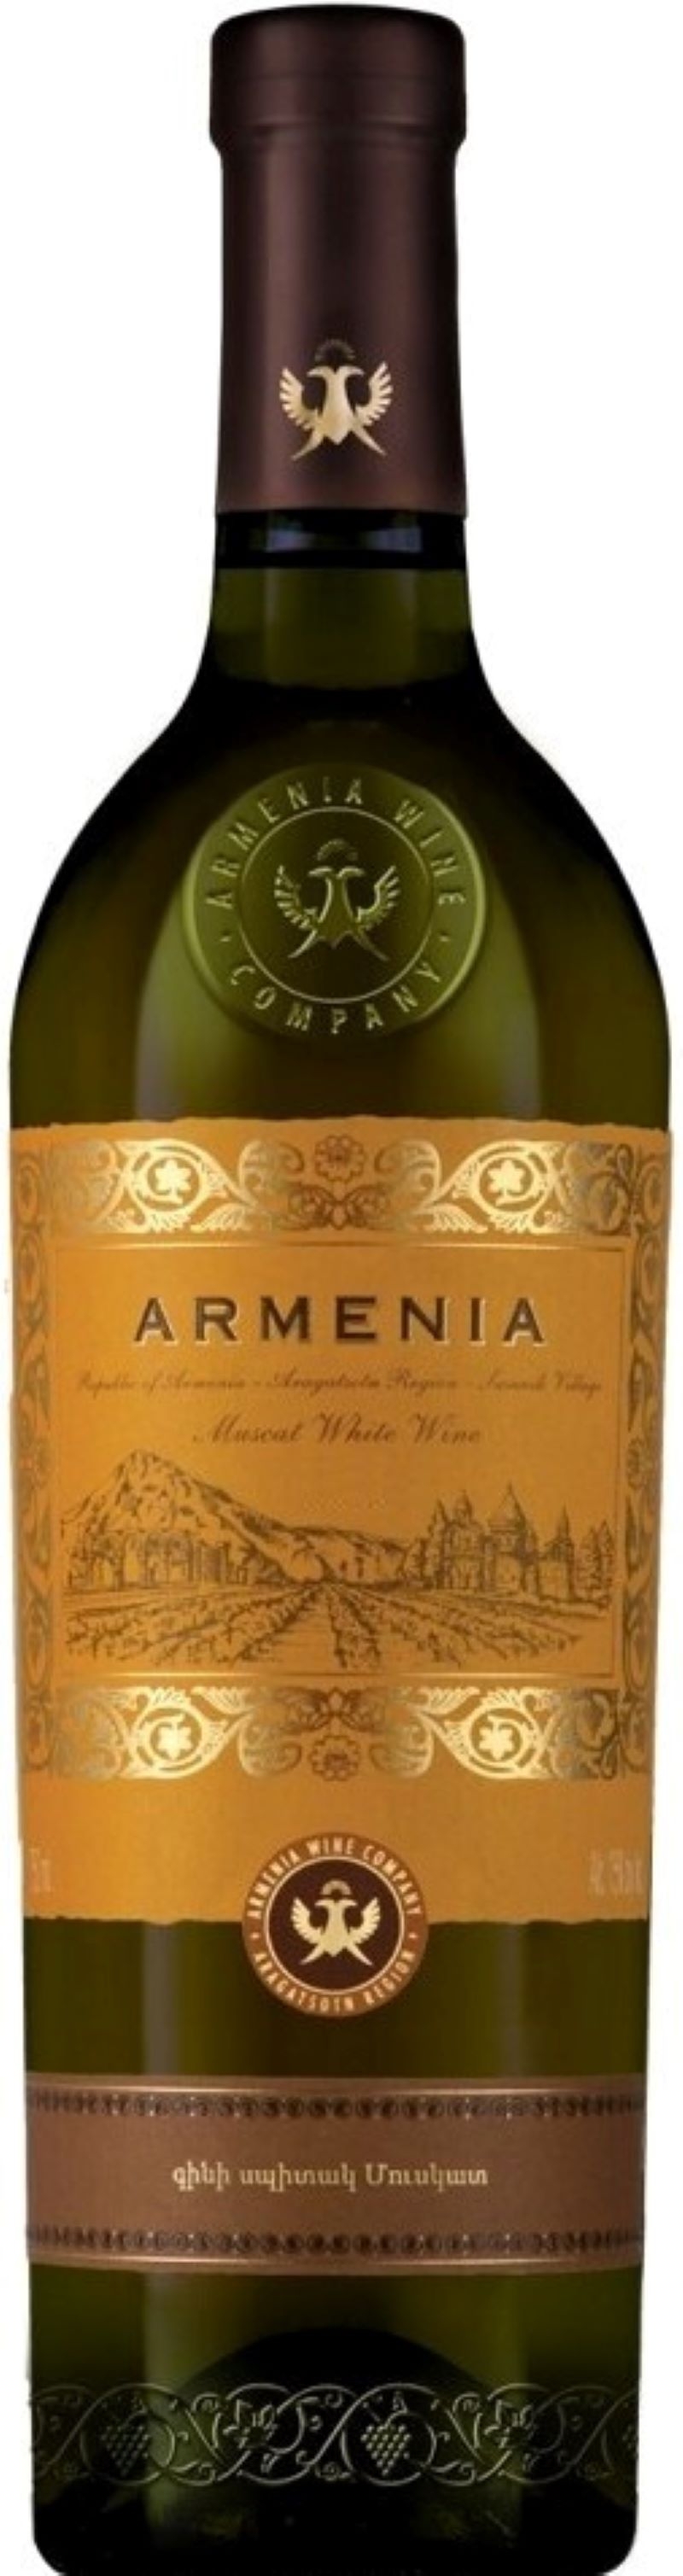 ARMENIA muskatinis baltasis pusiau saldus vynas - Vyno katalogas